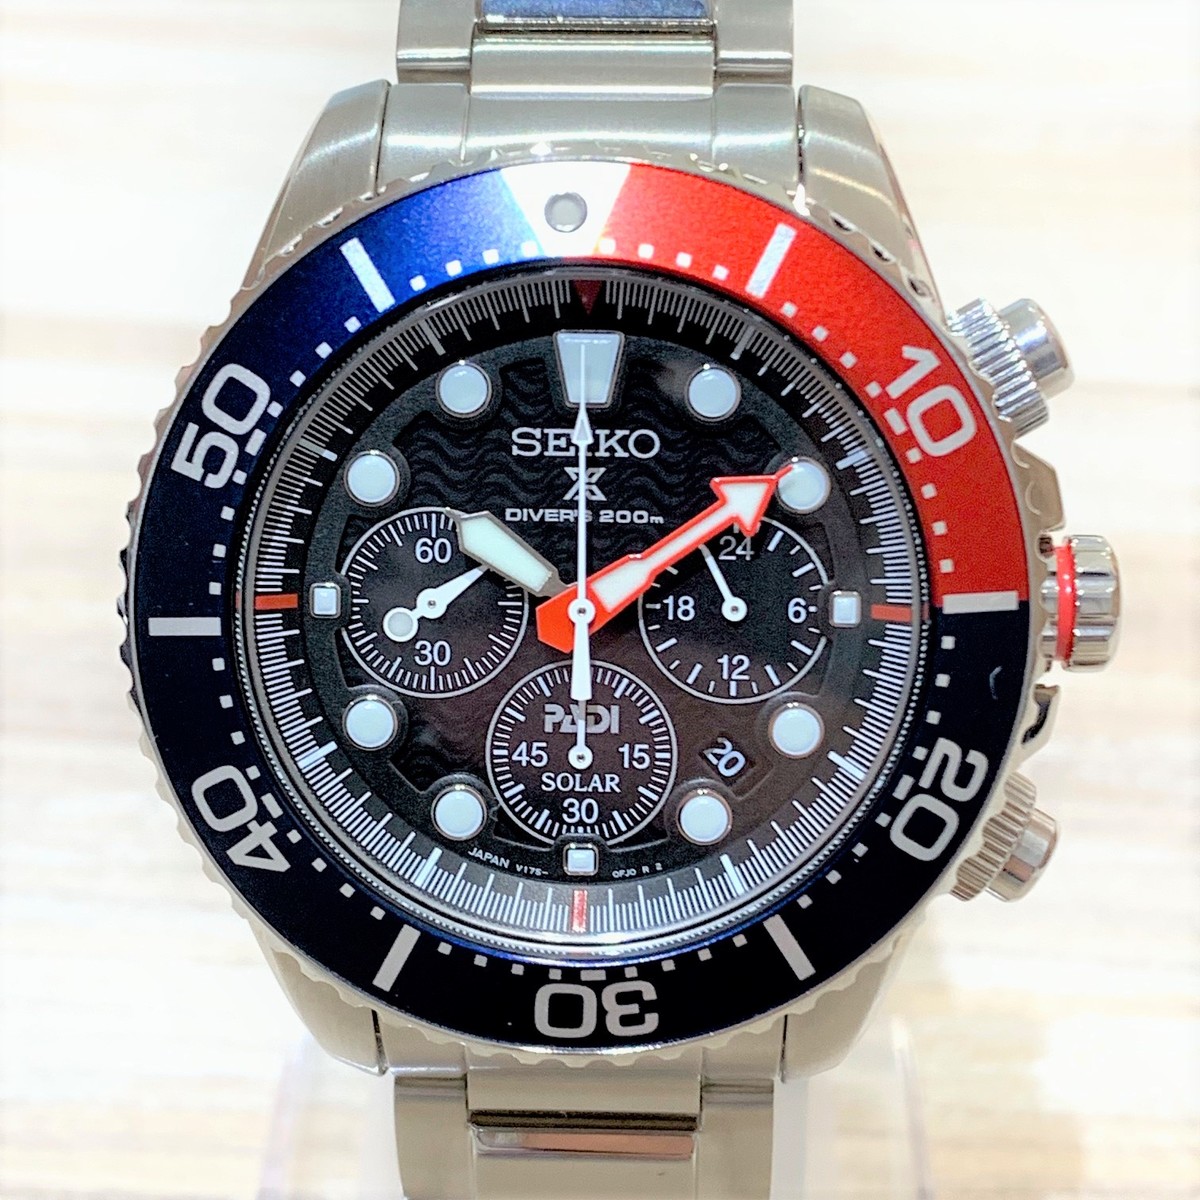 セイコーのSBDL051 プロスペックス PADI限定 ペプシベゼル 腕時計の買取実績です。